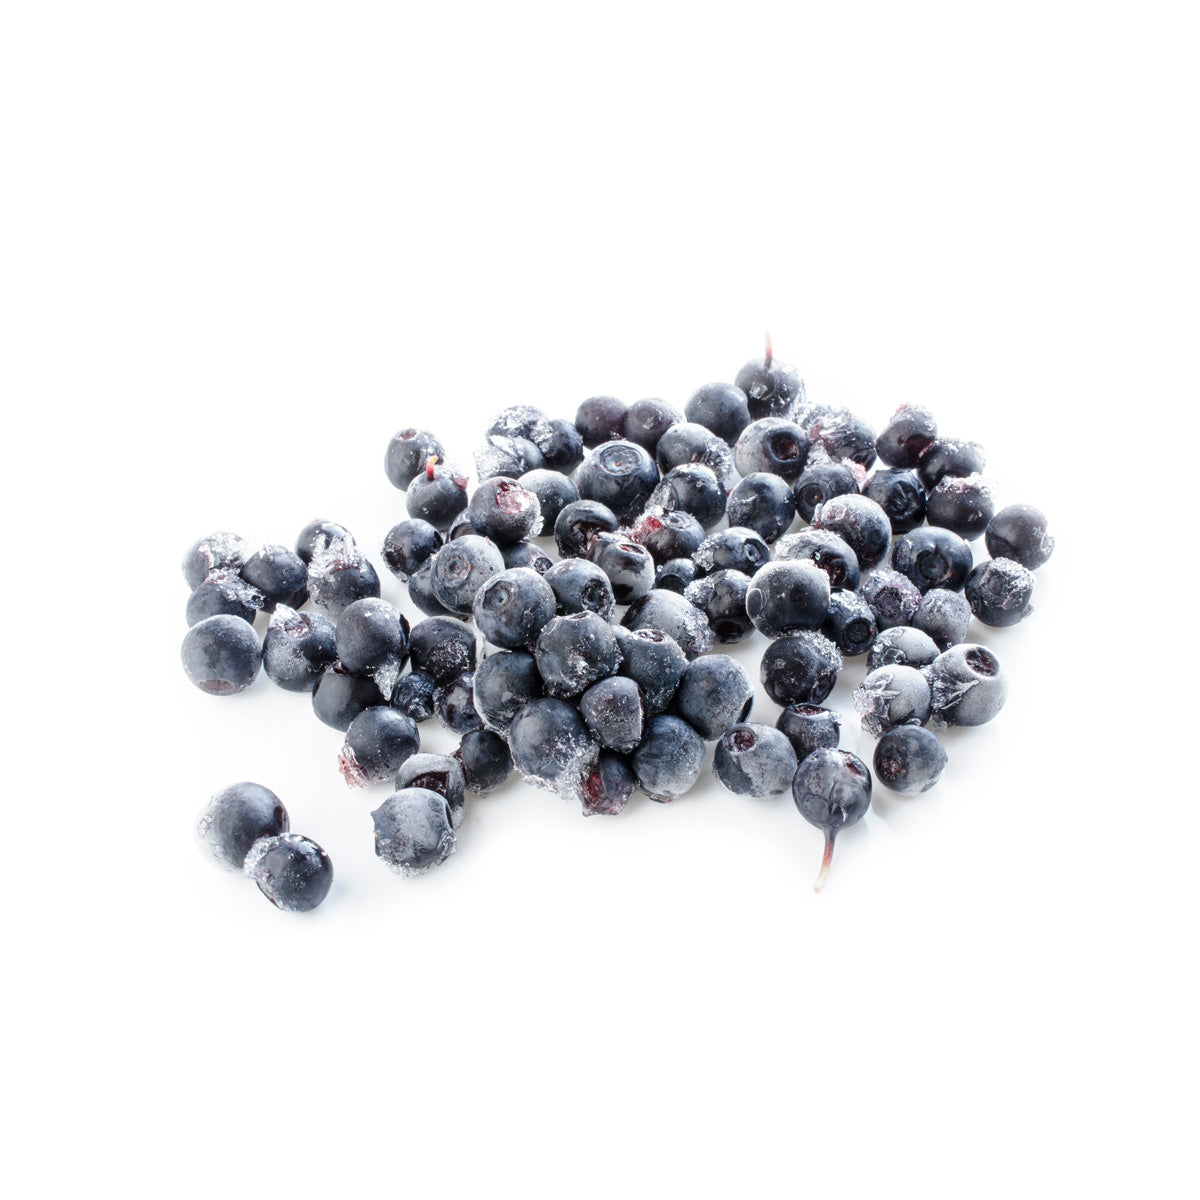 BoxNCase Frozen Wild Maine Blueberries